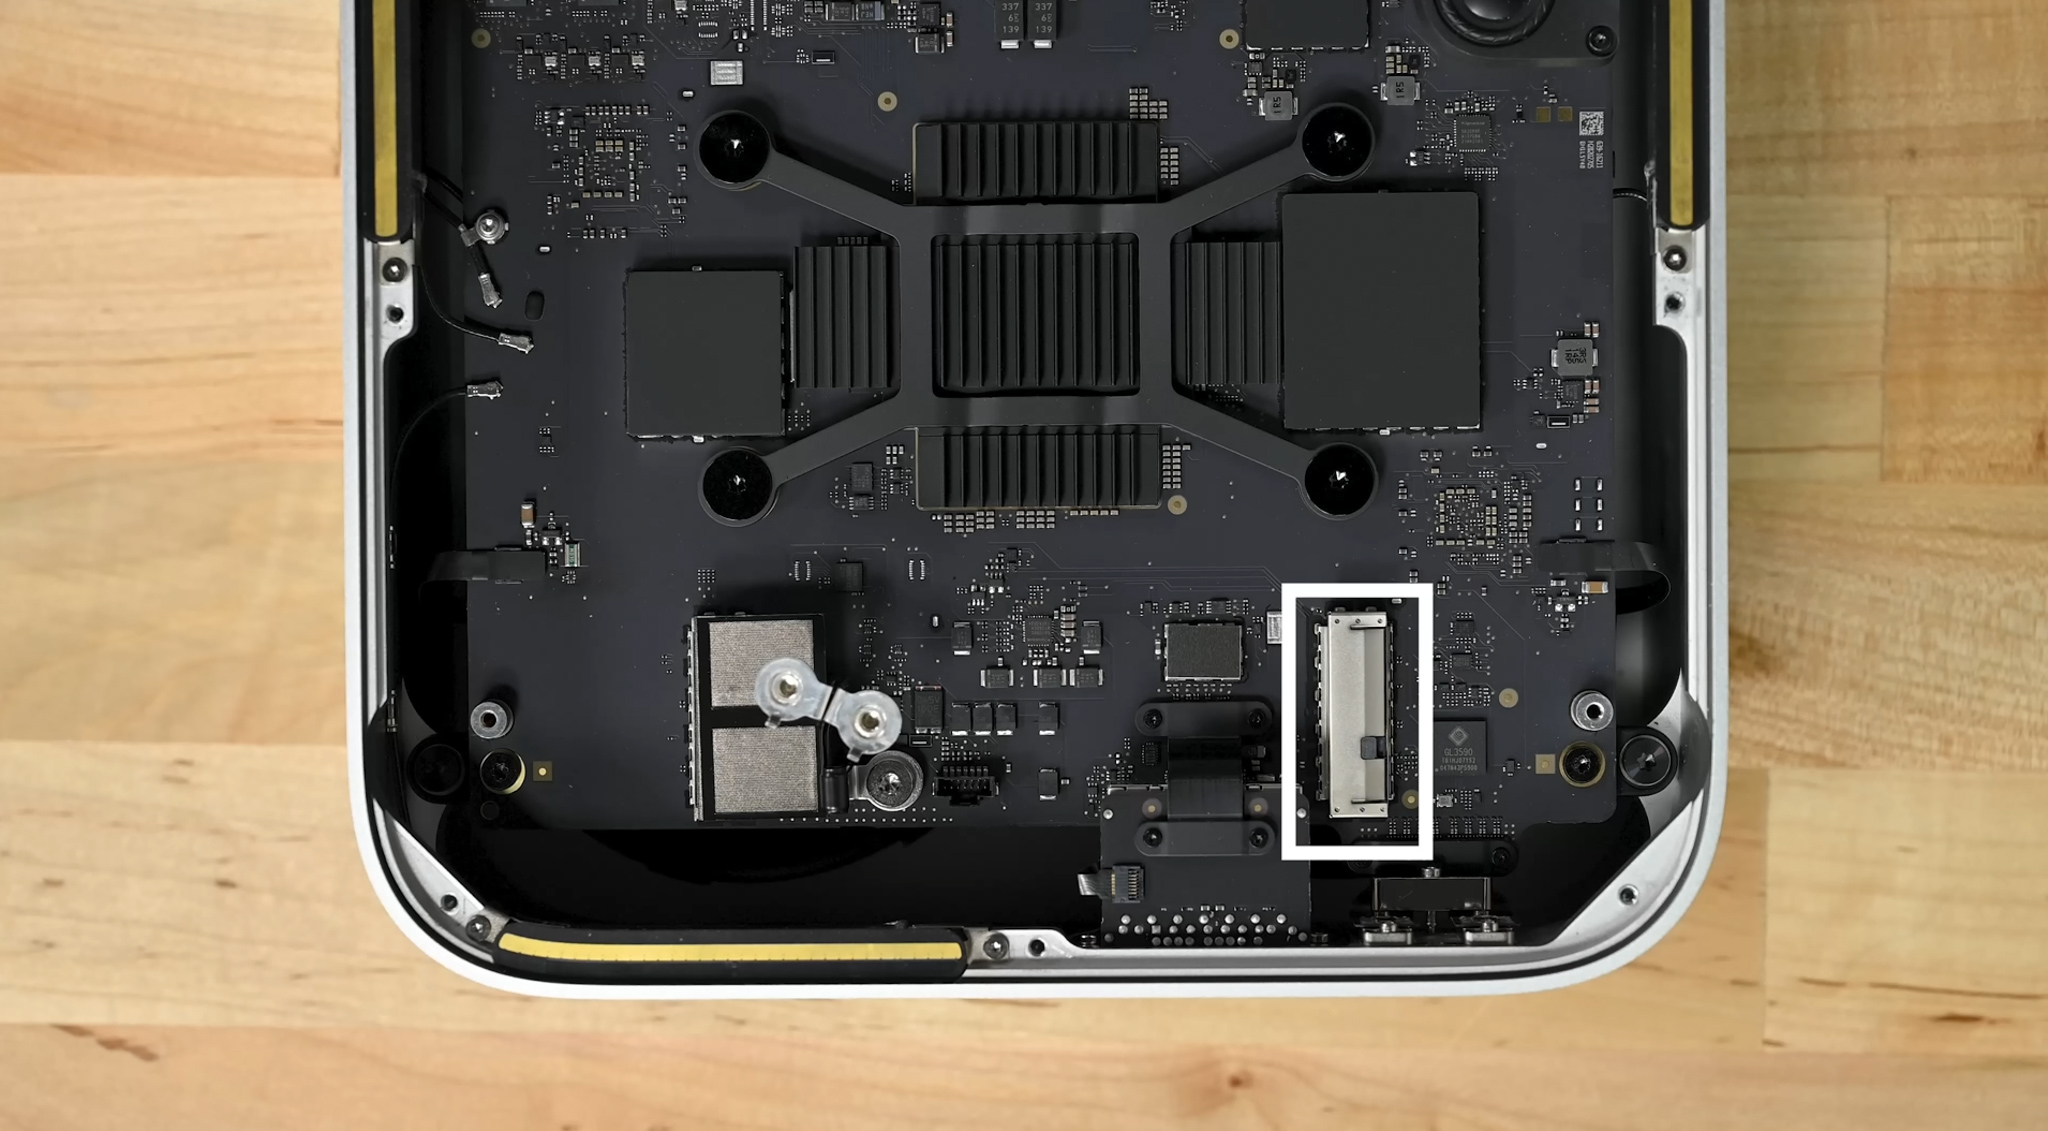 Tháo tung Mac Studio cùng iFixit: Thay thế được SSD, nhưng nâng cấp thì không